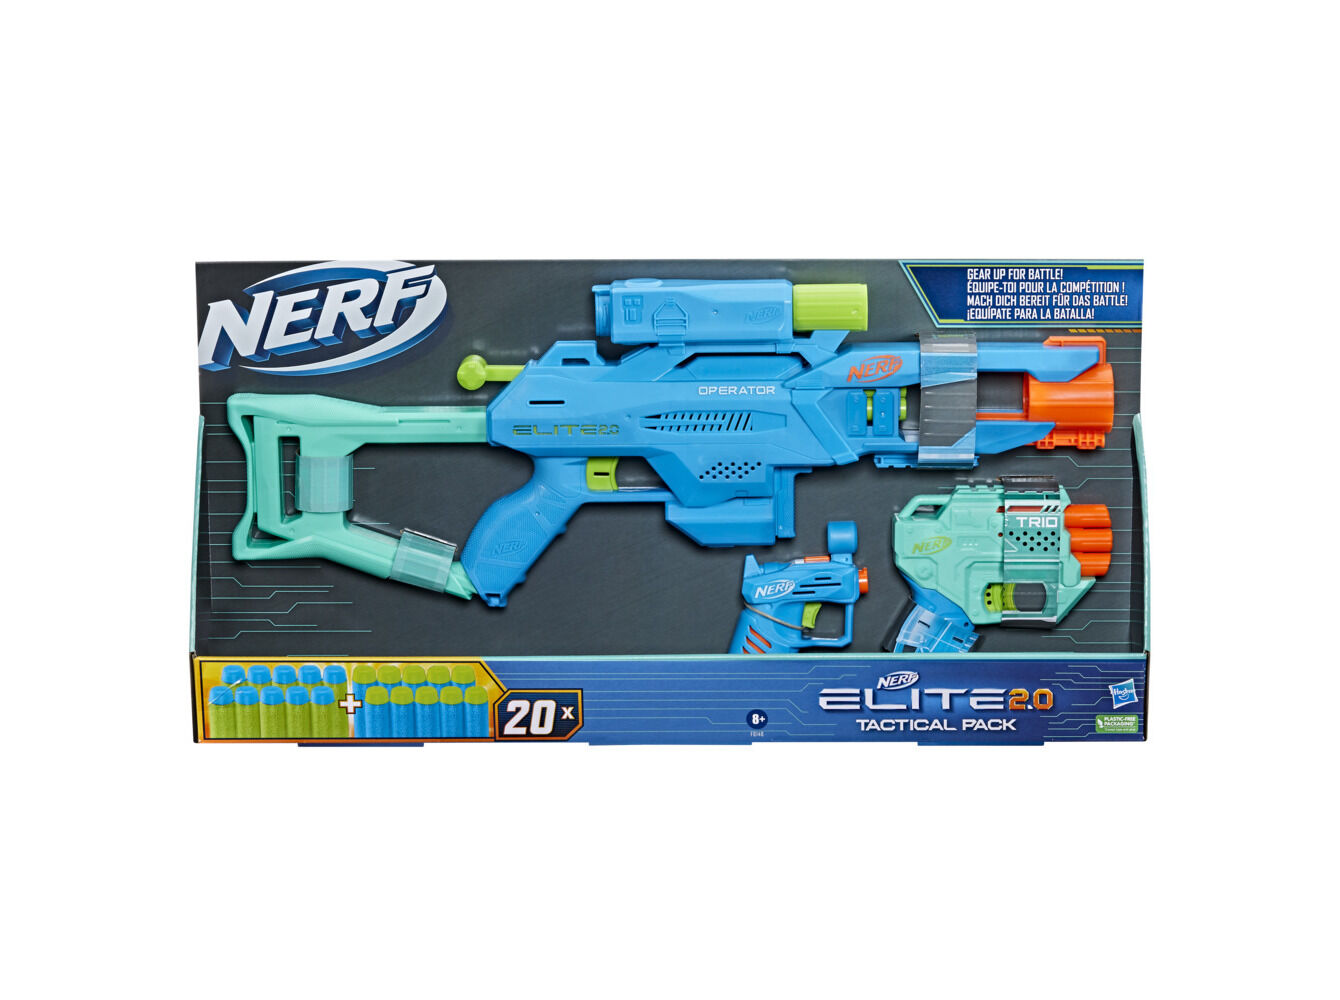 Nerf - Todas as Marcas - Jogos e Brinquedos 